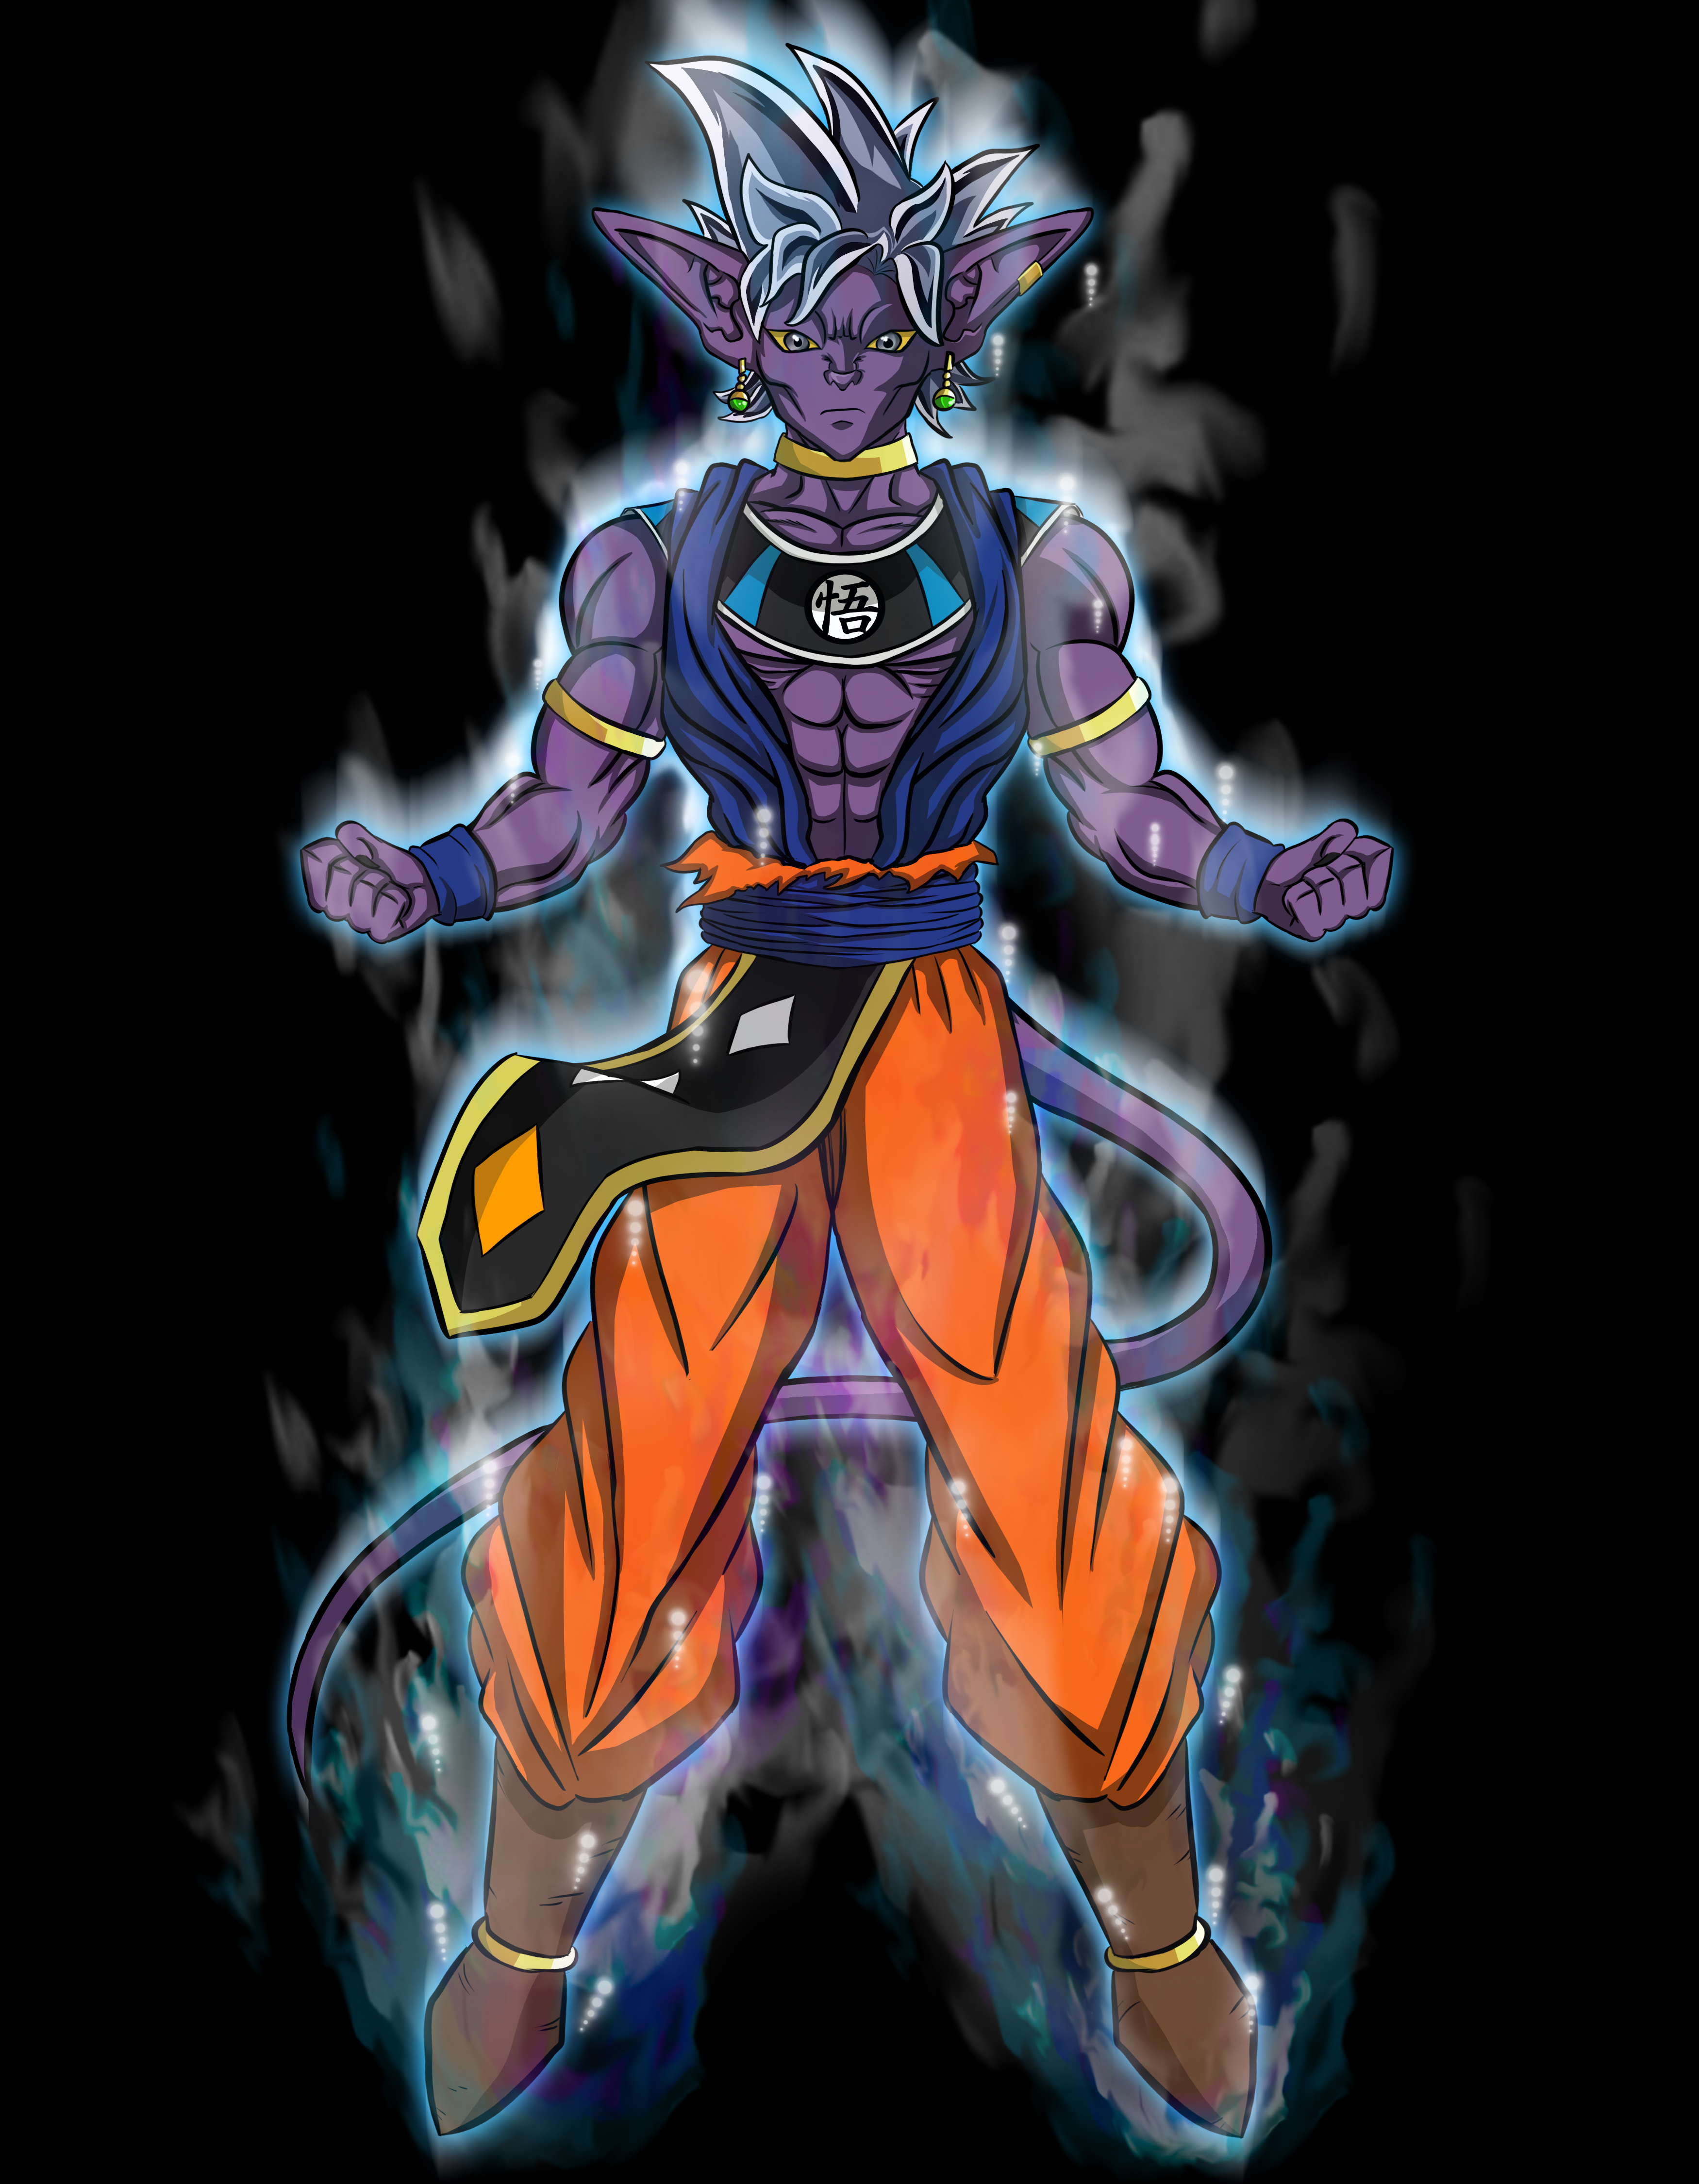 God Goku (Modification) by ODoutor on DeviantArt